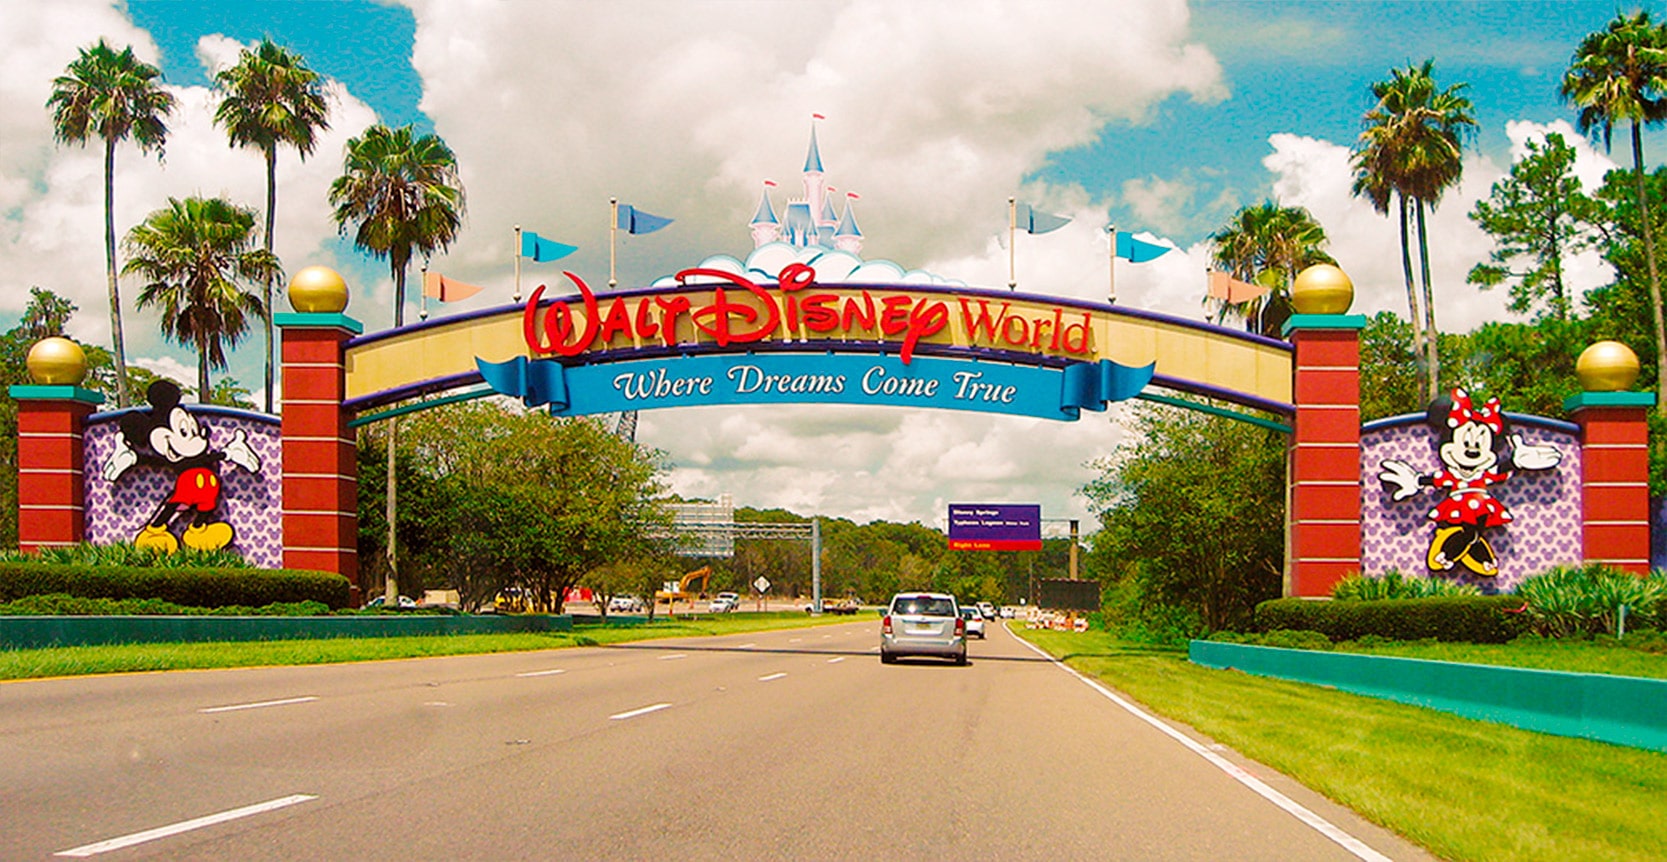 Foto do portal de entrada do Walt Disney World